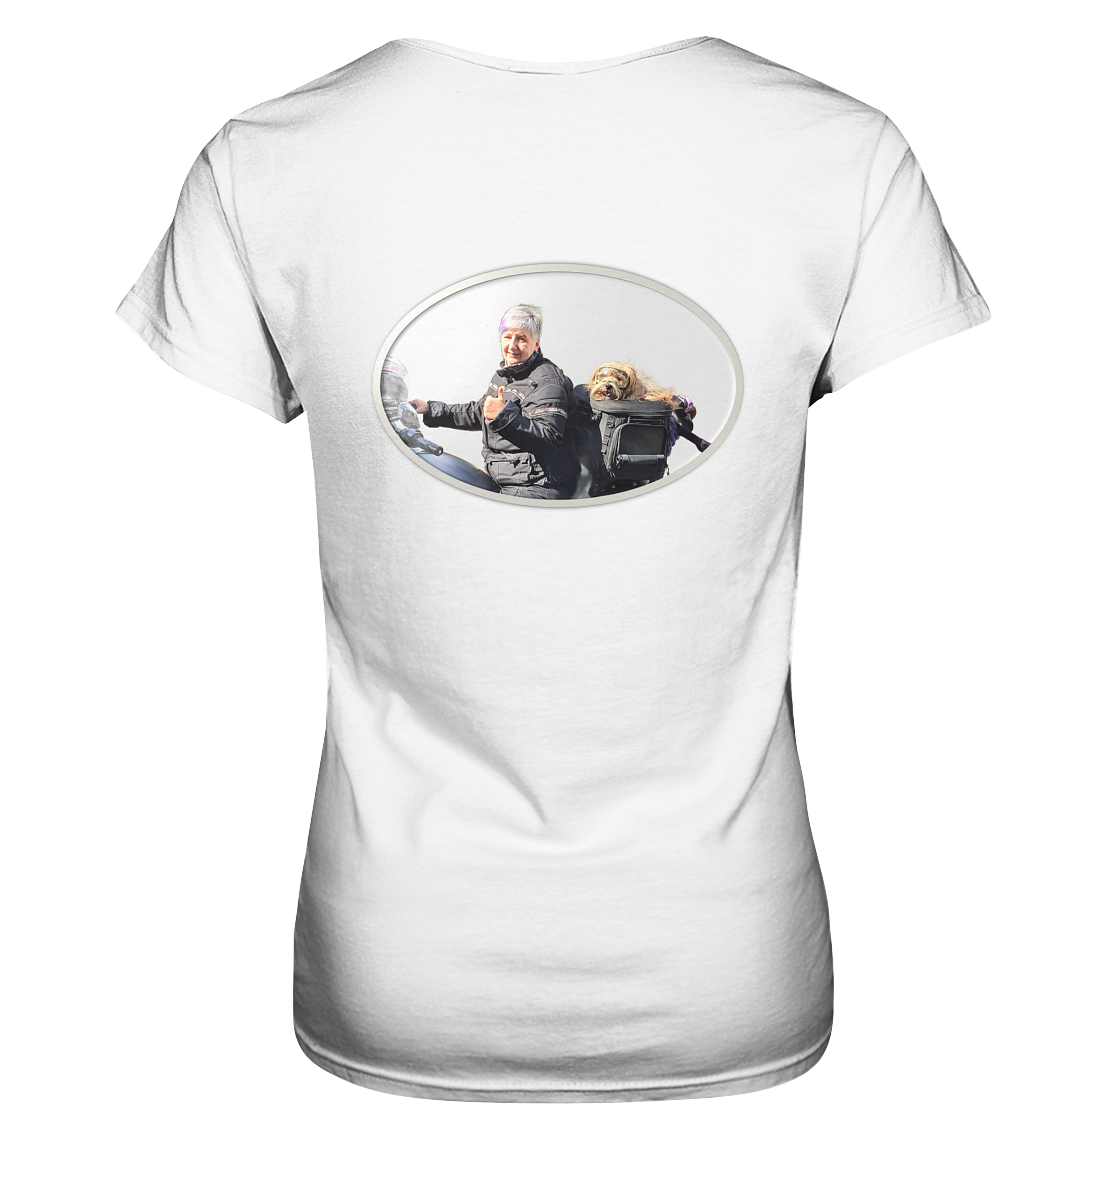 "Dog on tour" _ für Andrea M. | Shirt mit beidseitigem Foto-Druck in Top-Qualität